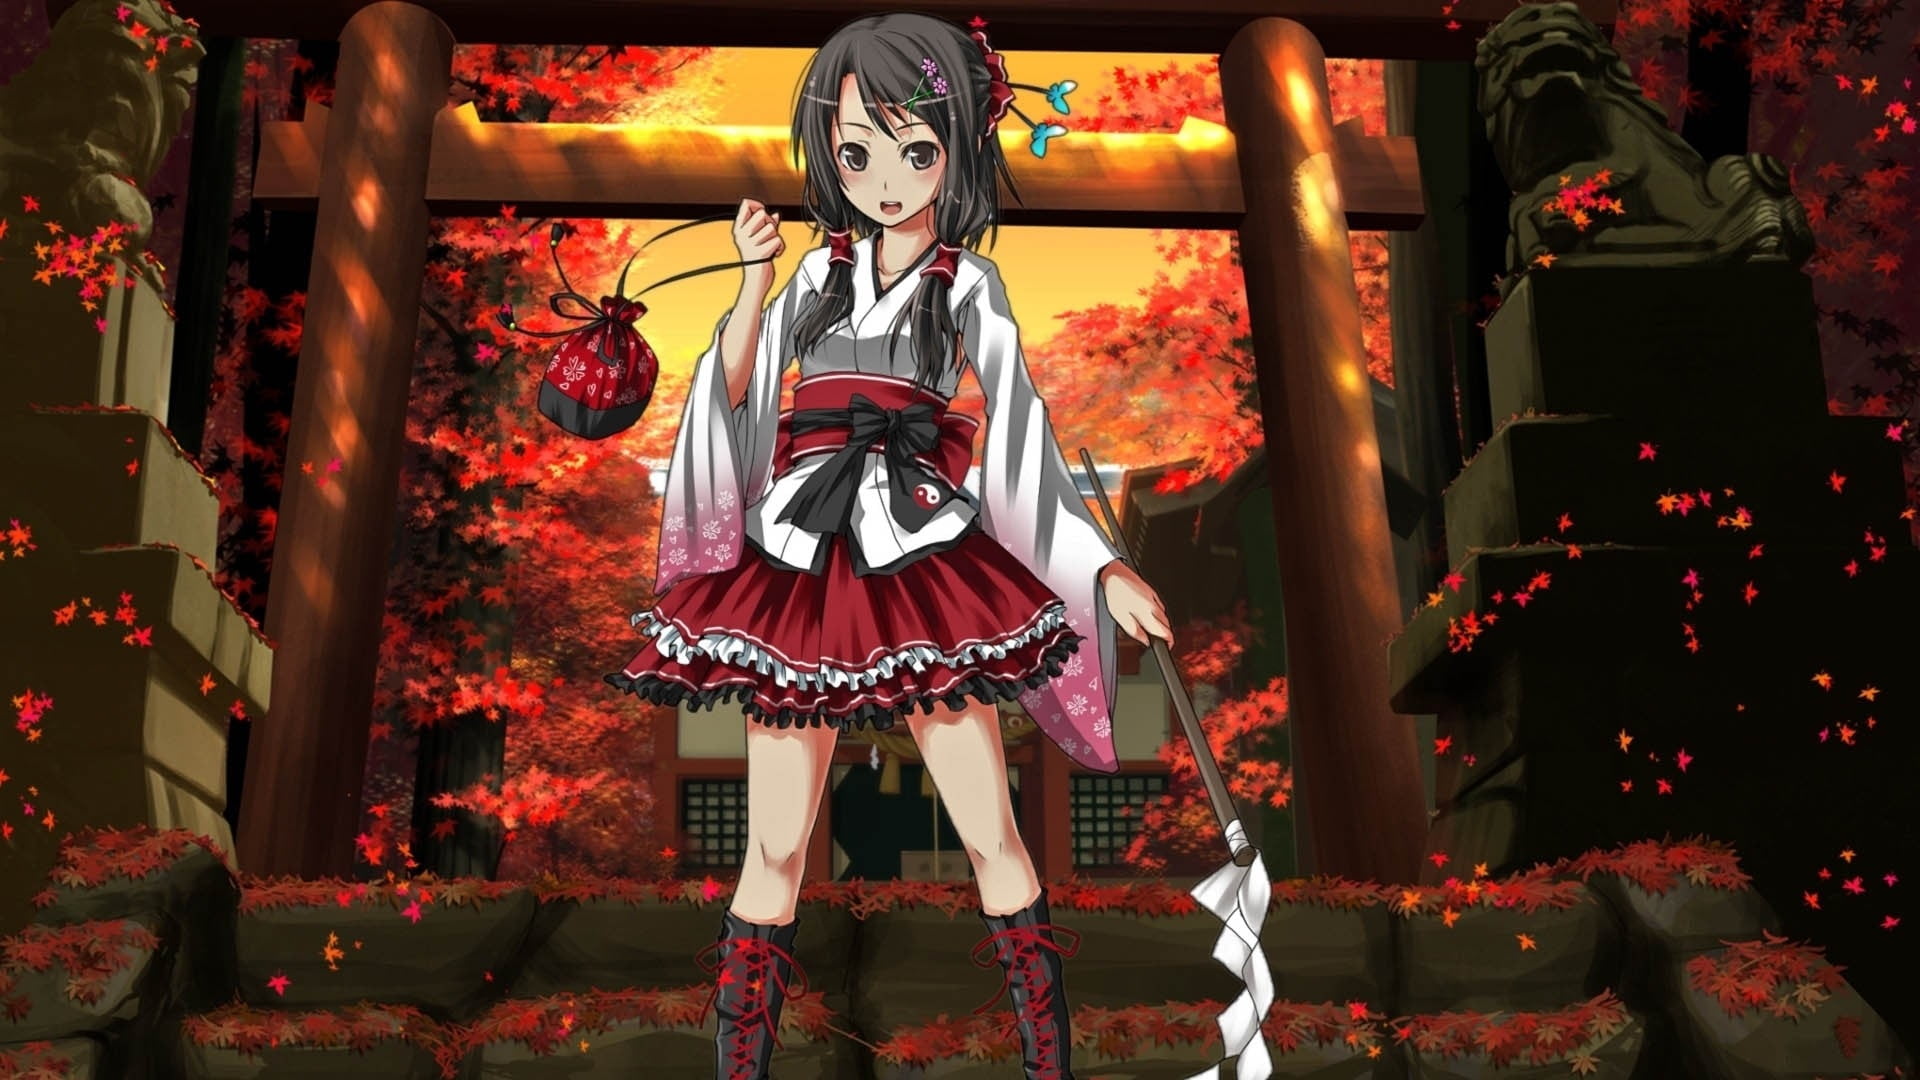 kimono dressed girl anime character